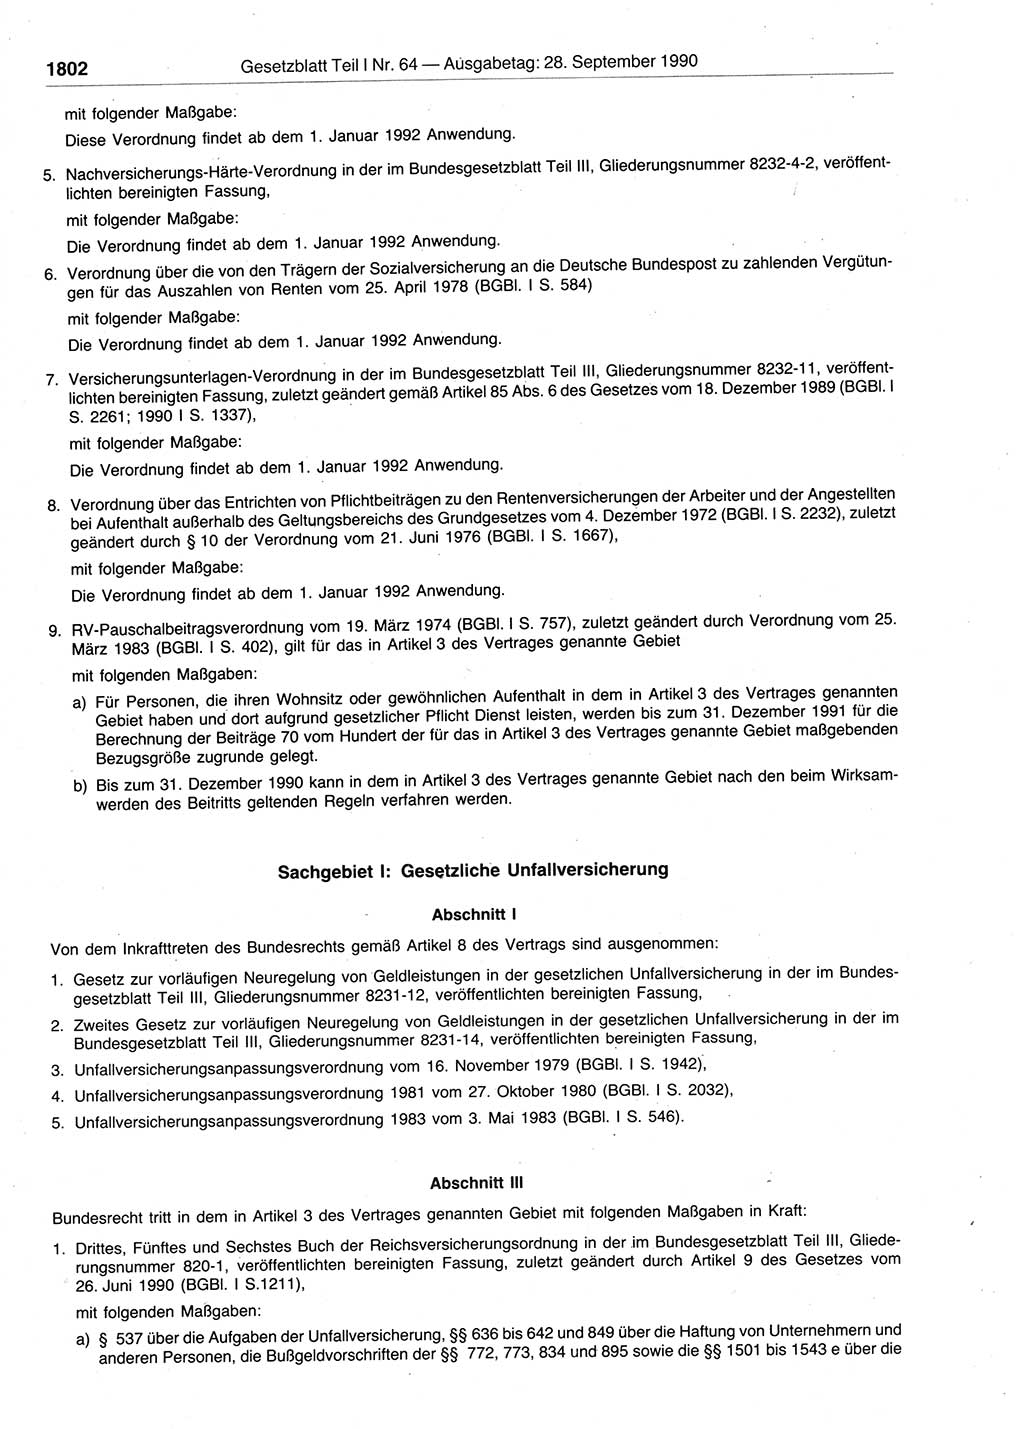 Gesetzblatt (GBl.) der Deutschen Demokratischen Republik (DDR) Teil Ⅰ 1990, Seite 1802 (GBl. DDR Ⅰ 1990, S. 1802)